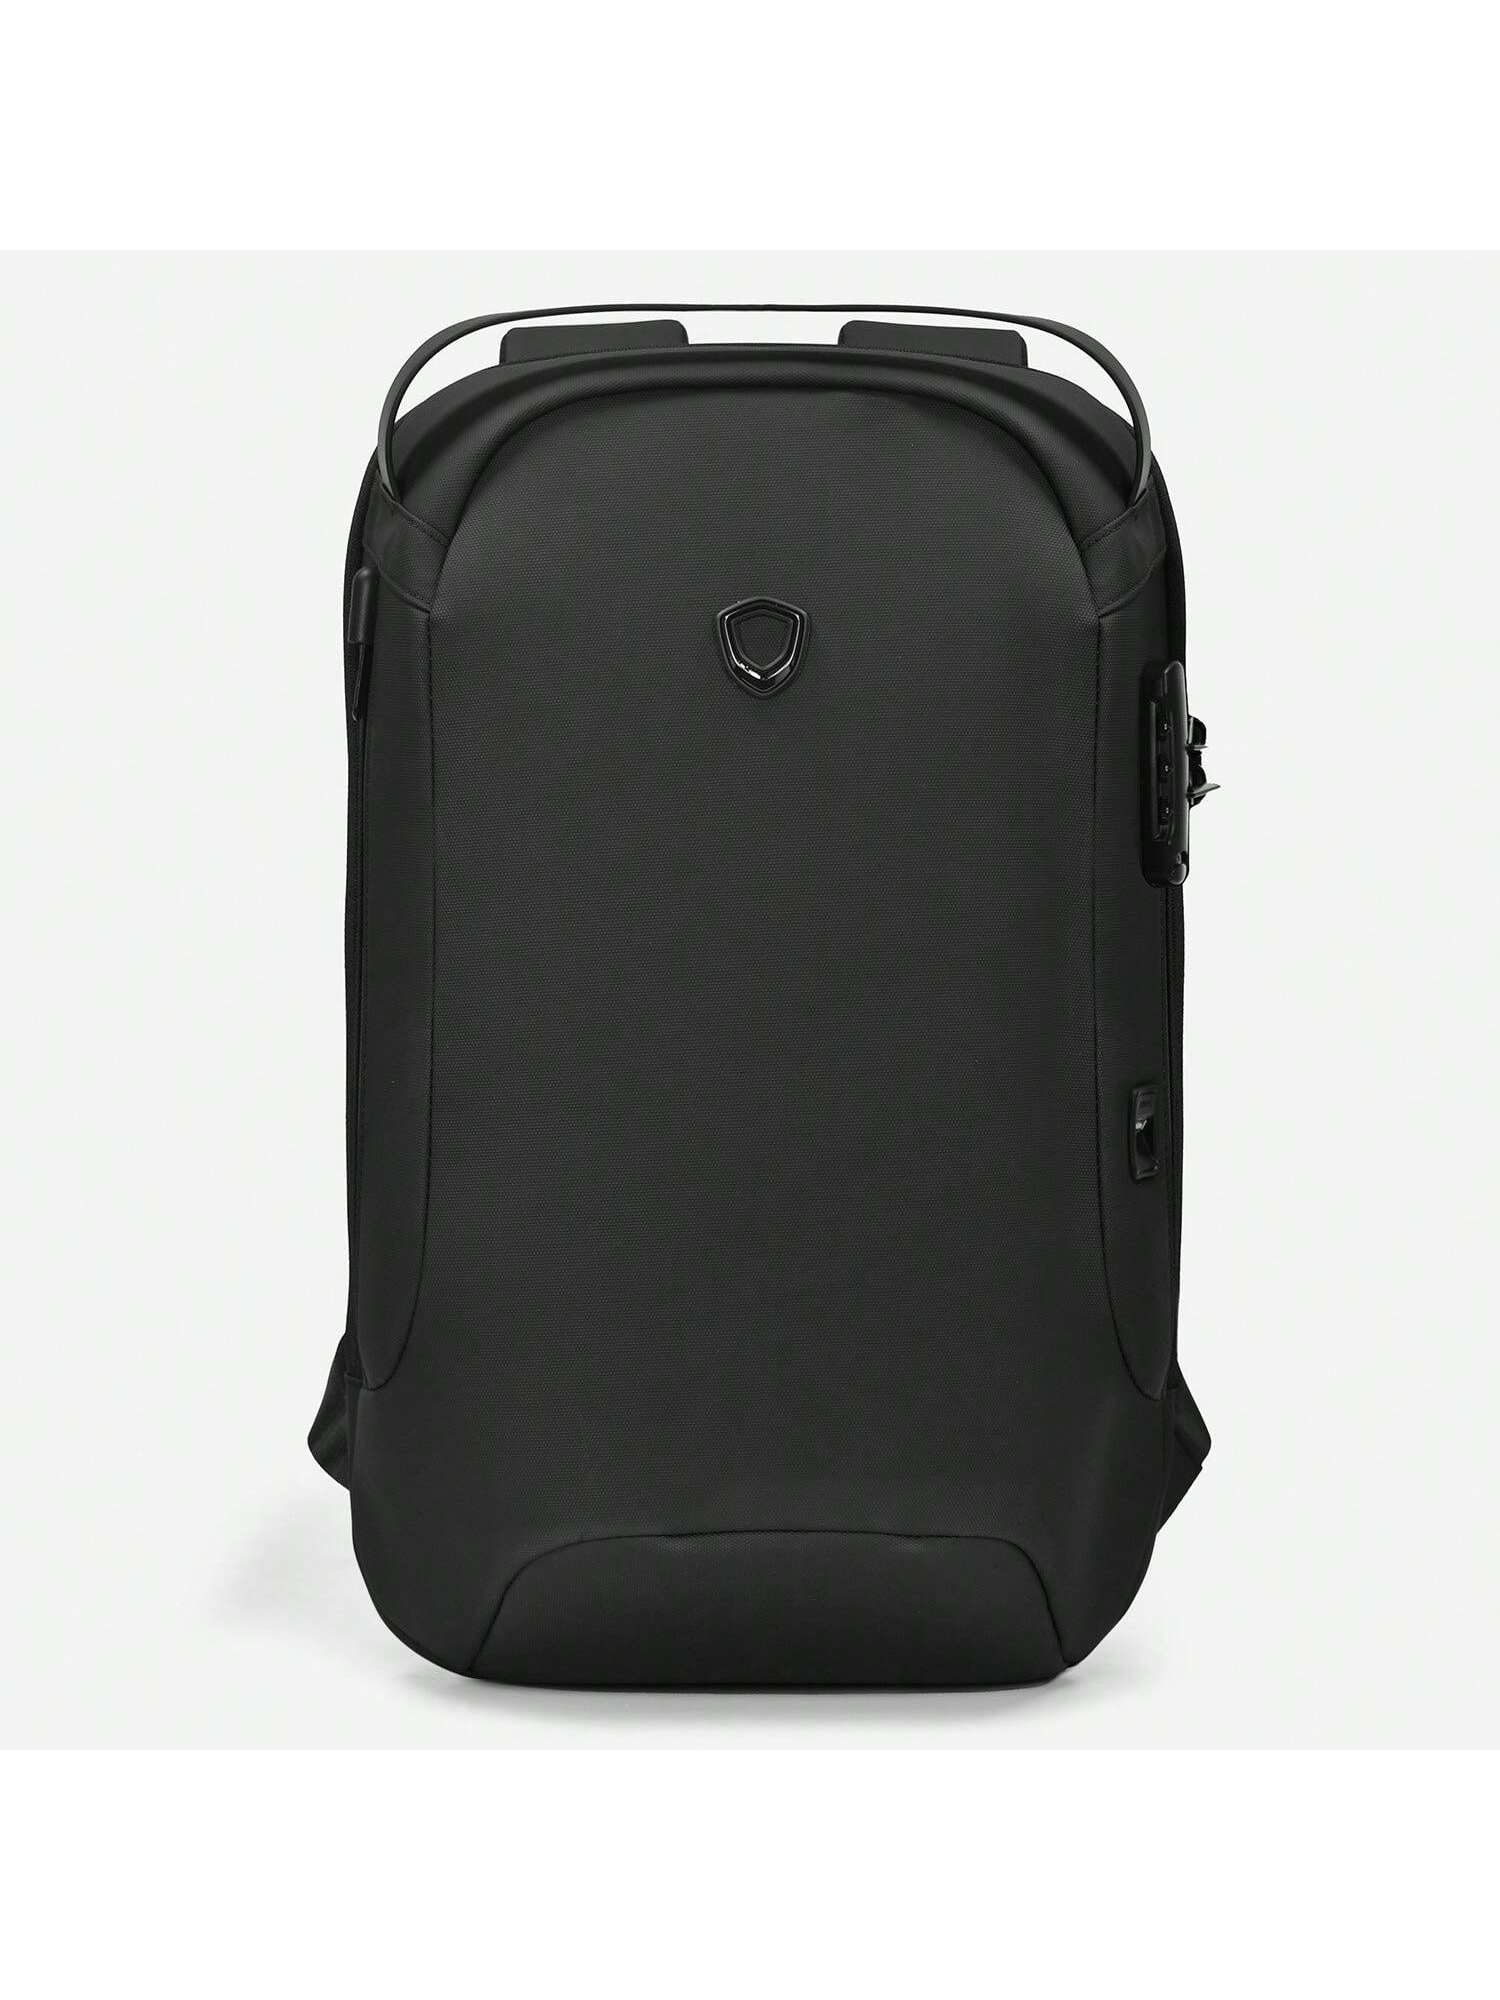 Матовый водостойкий рюкзак Frailey с USB-портом и кодовым замком, черный рюкзак школьный с usb портом для девочек